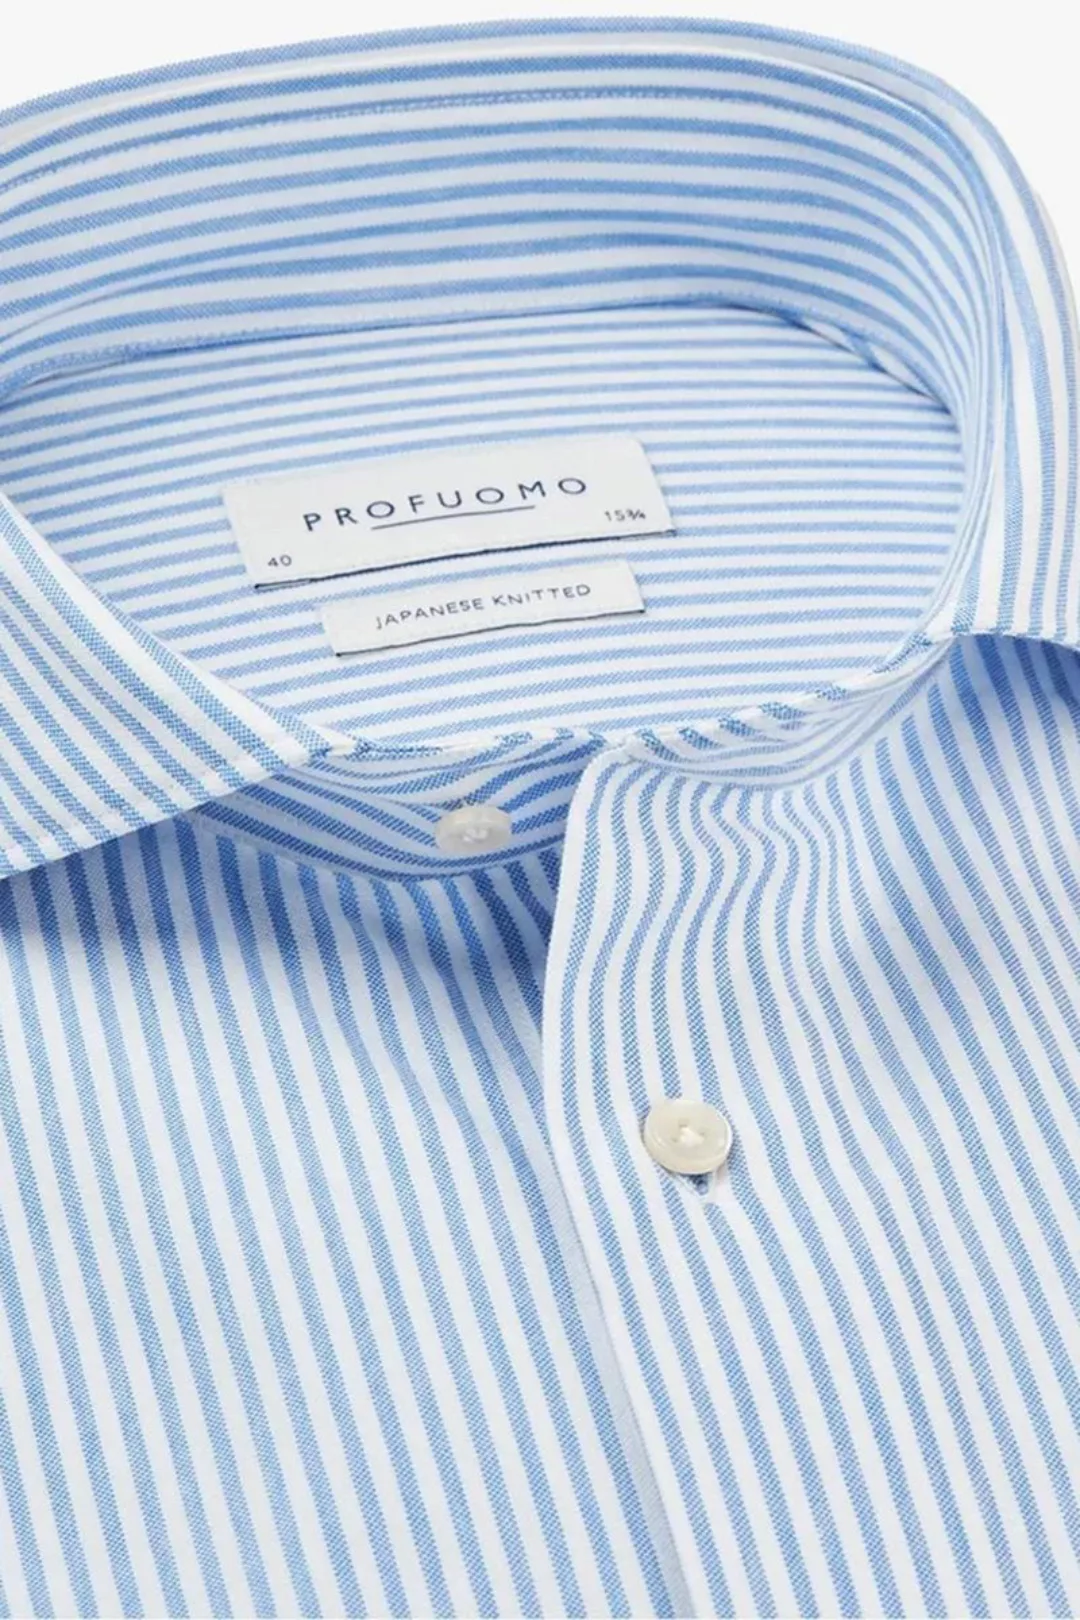 Profuomo Hemd Japanese Knitted Blau Streifen - Größe 44 günstig online kaufen